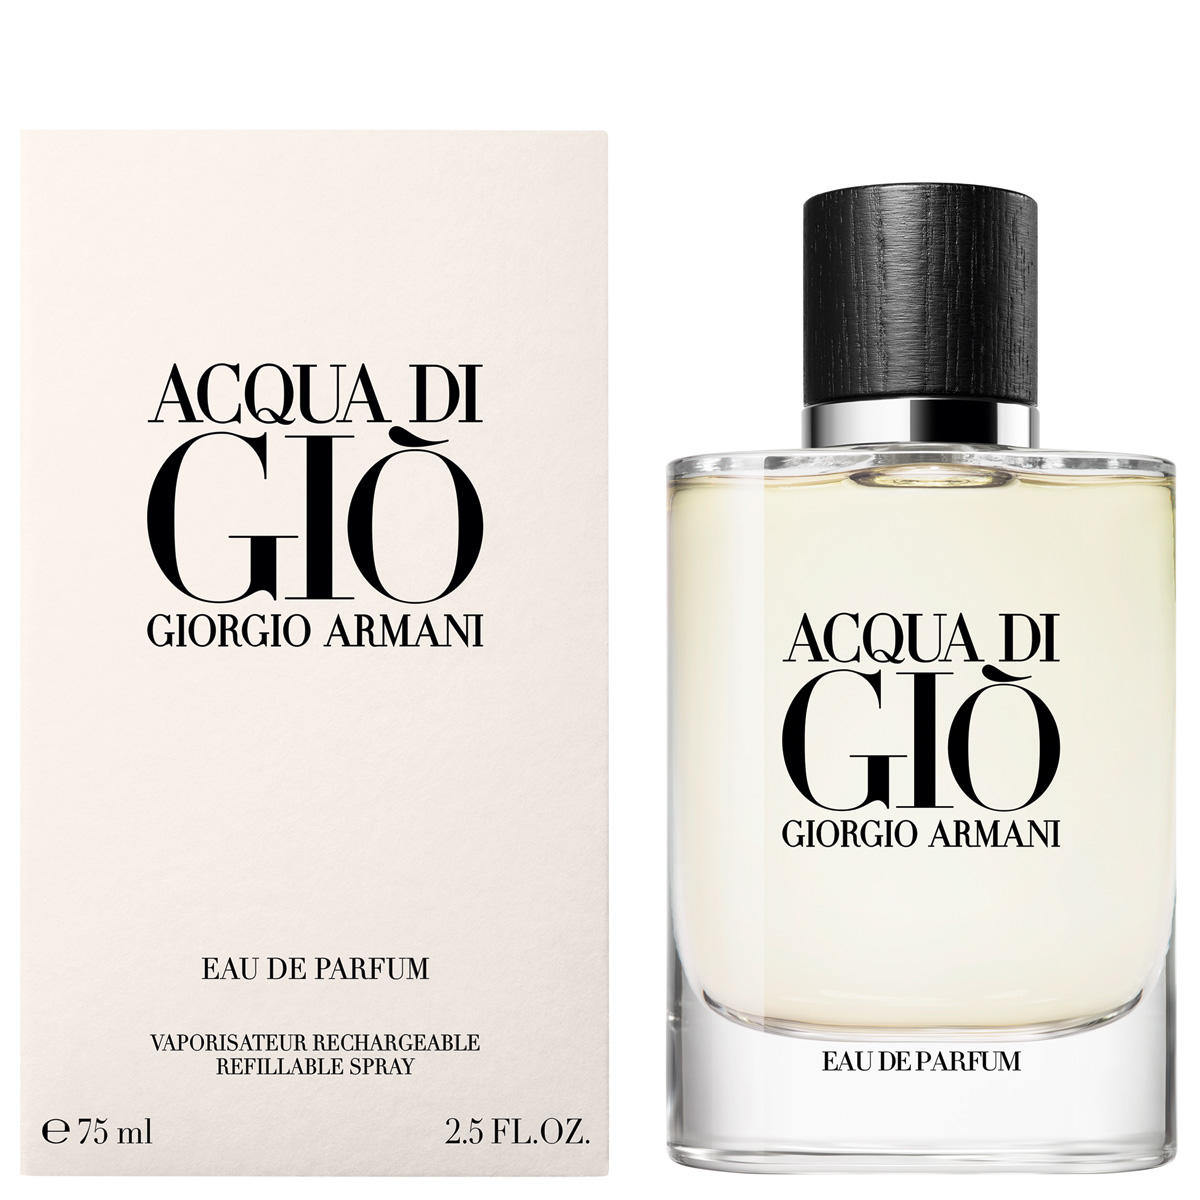 Giorgio Armani ACQUA DI GIÒ Refillable Eau de Parfum  - 1